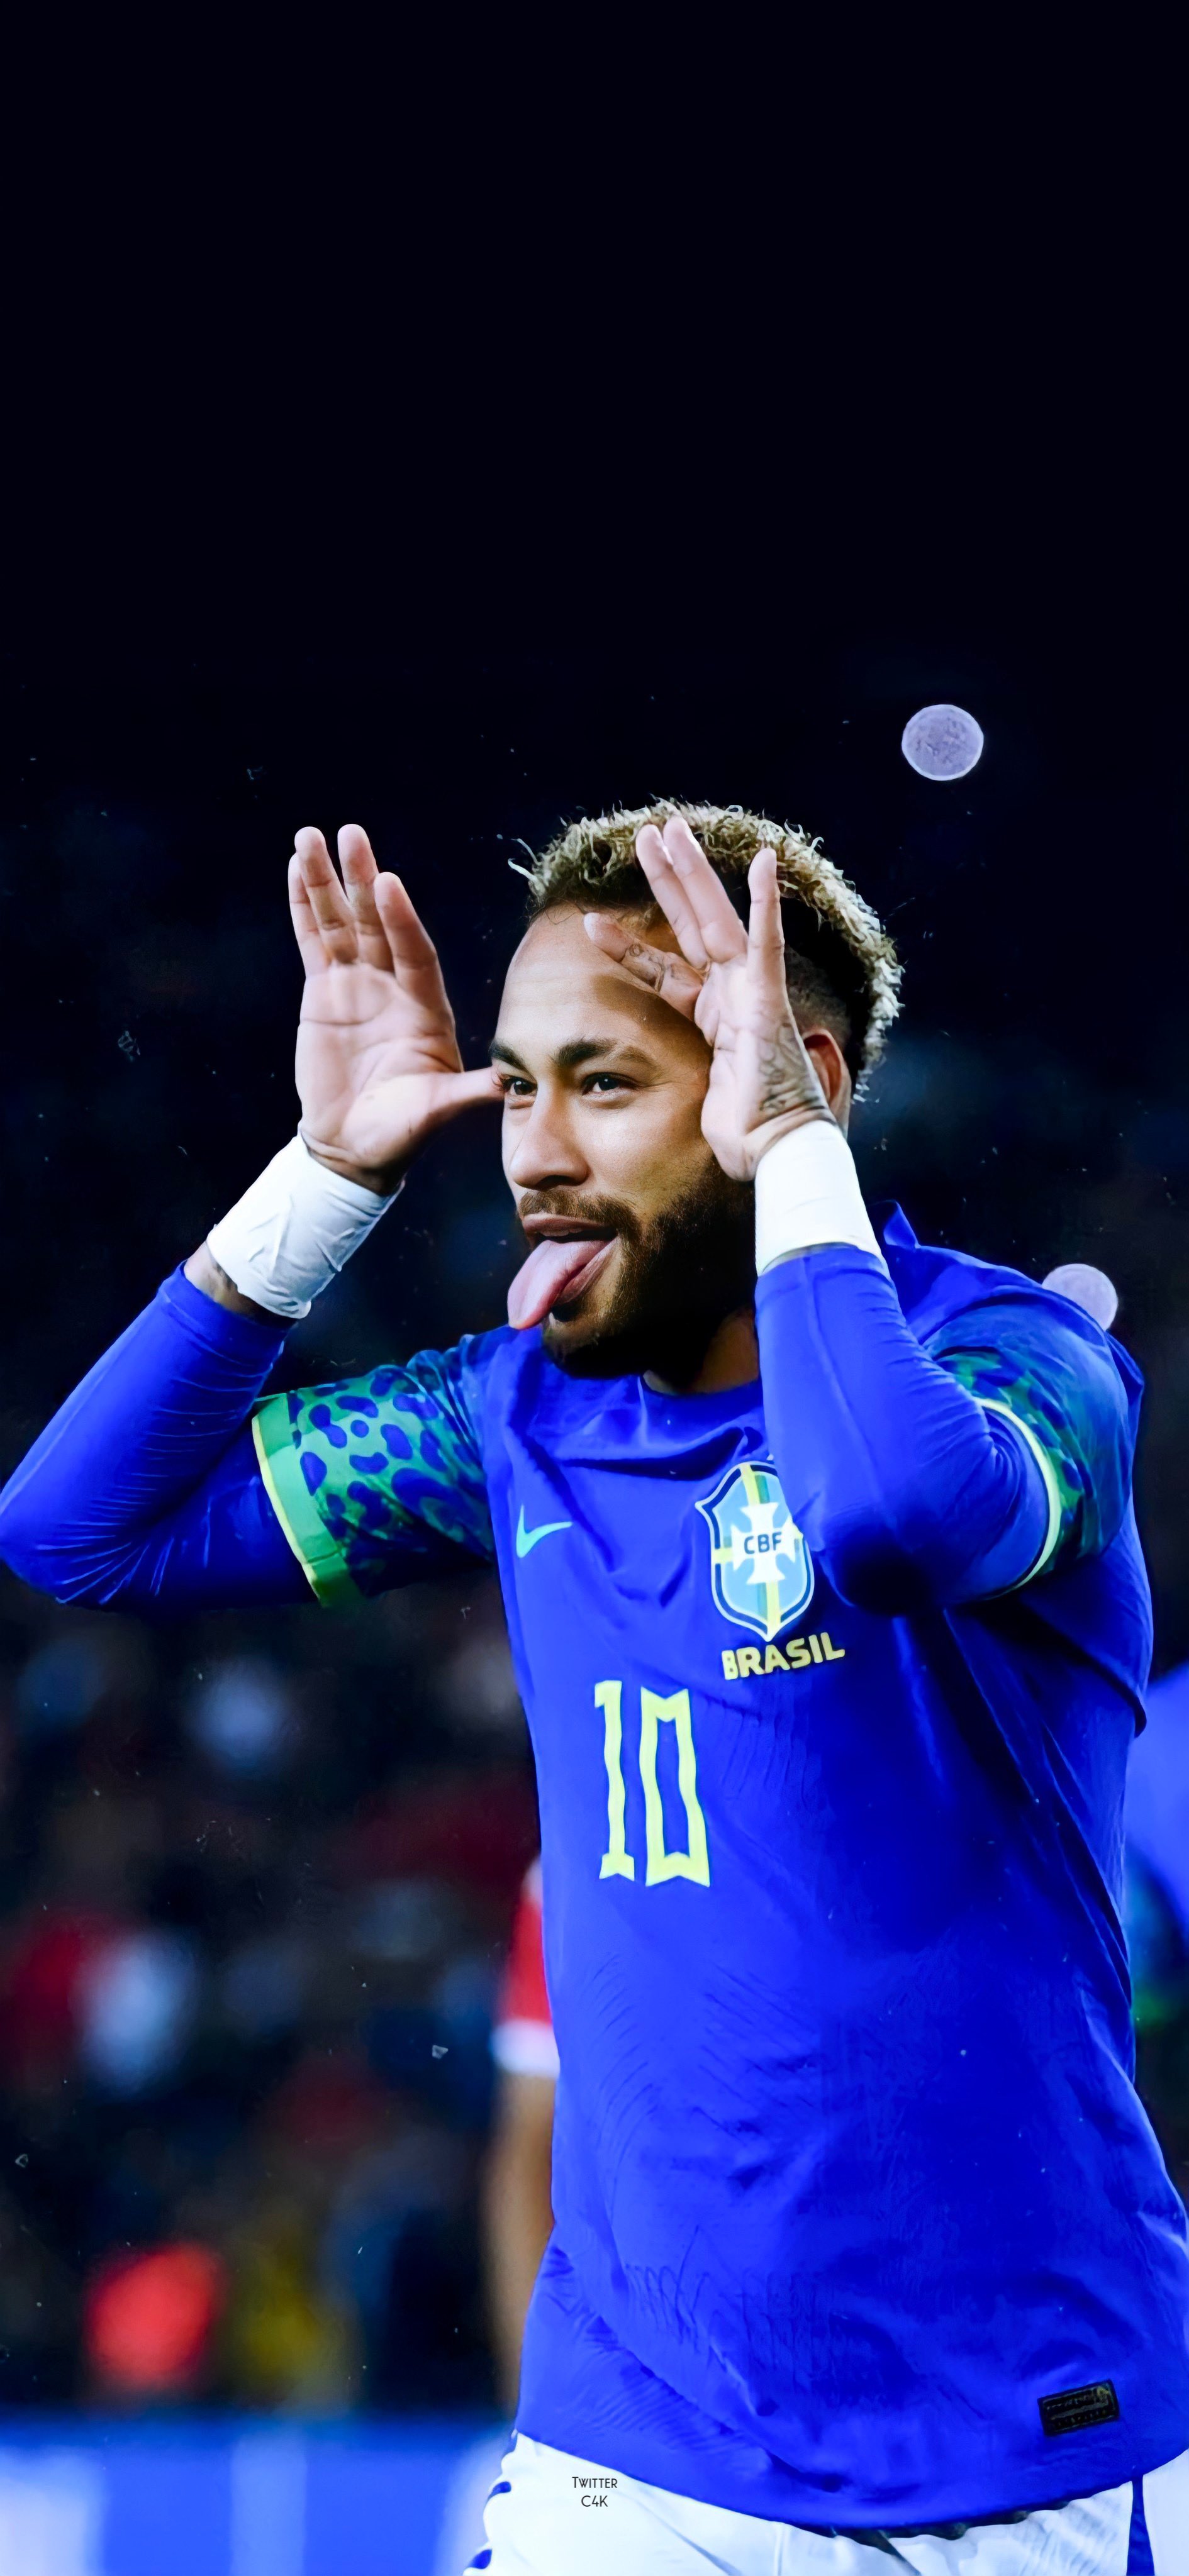 Neymar J Wallpapers: Đam mê Neymar Jr và đang muốn tìm kiếm bộ sưu tập hình nền đầy đủ hơn? Hãy khám phá ảnh liên quan cùng tìm kiếm những hình ảnh đẹp nhất, độc đáo nhất với chất lượng tuyệt vời.